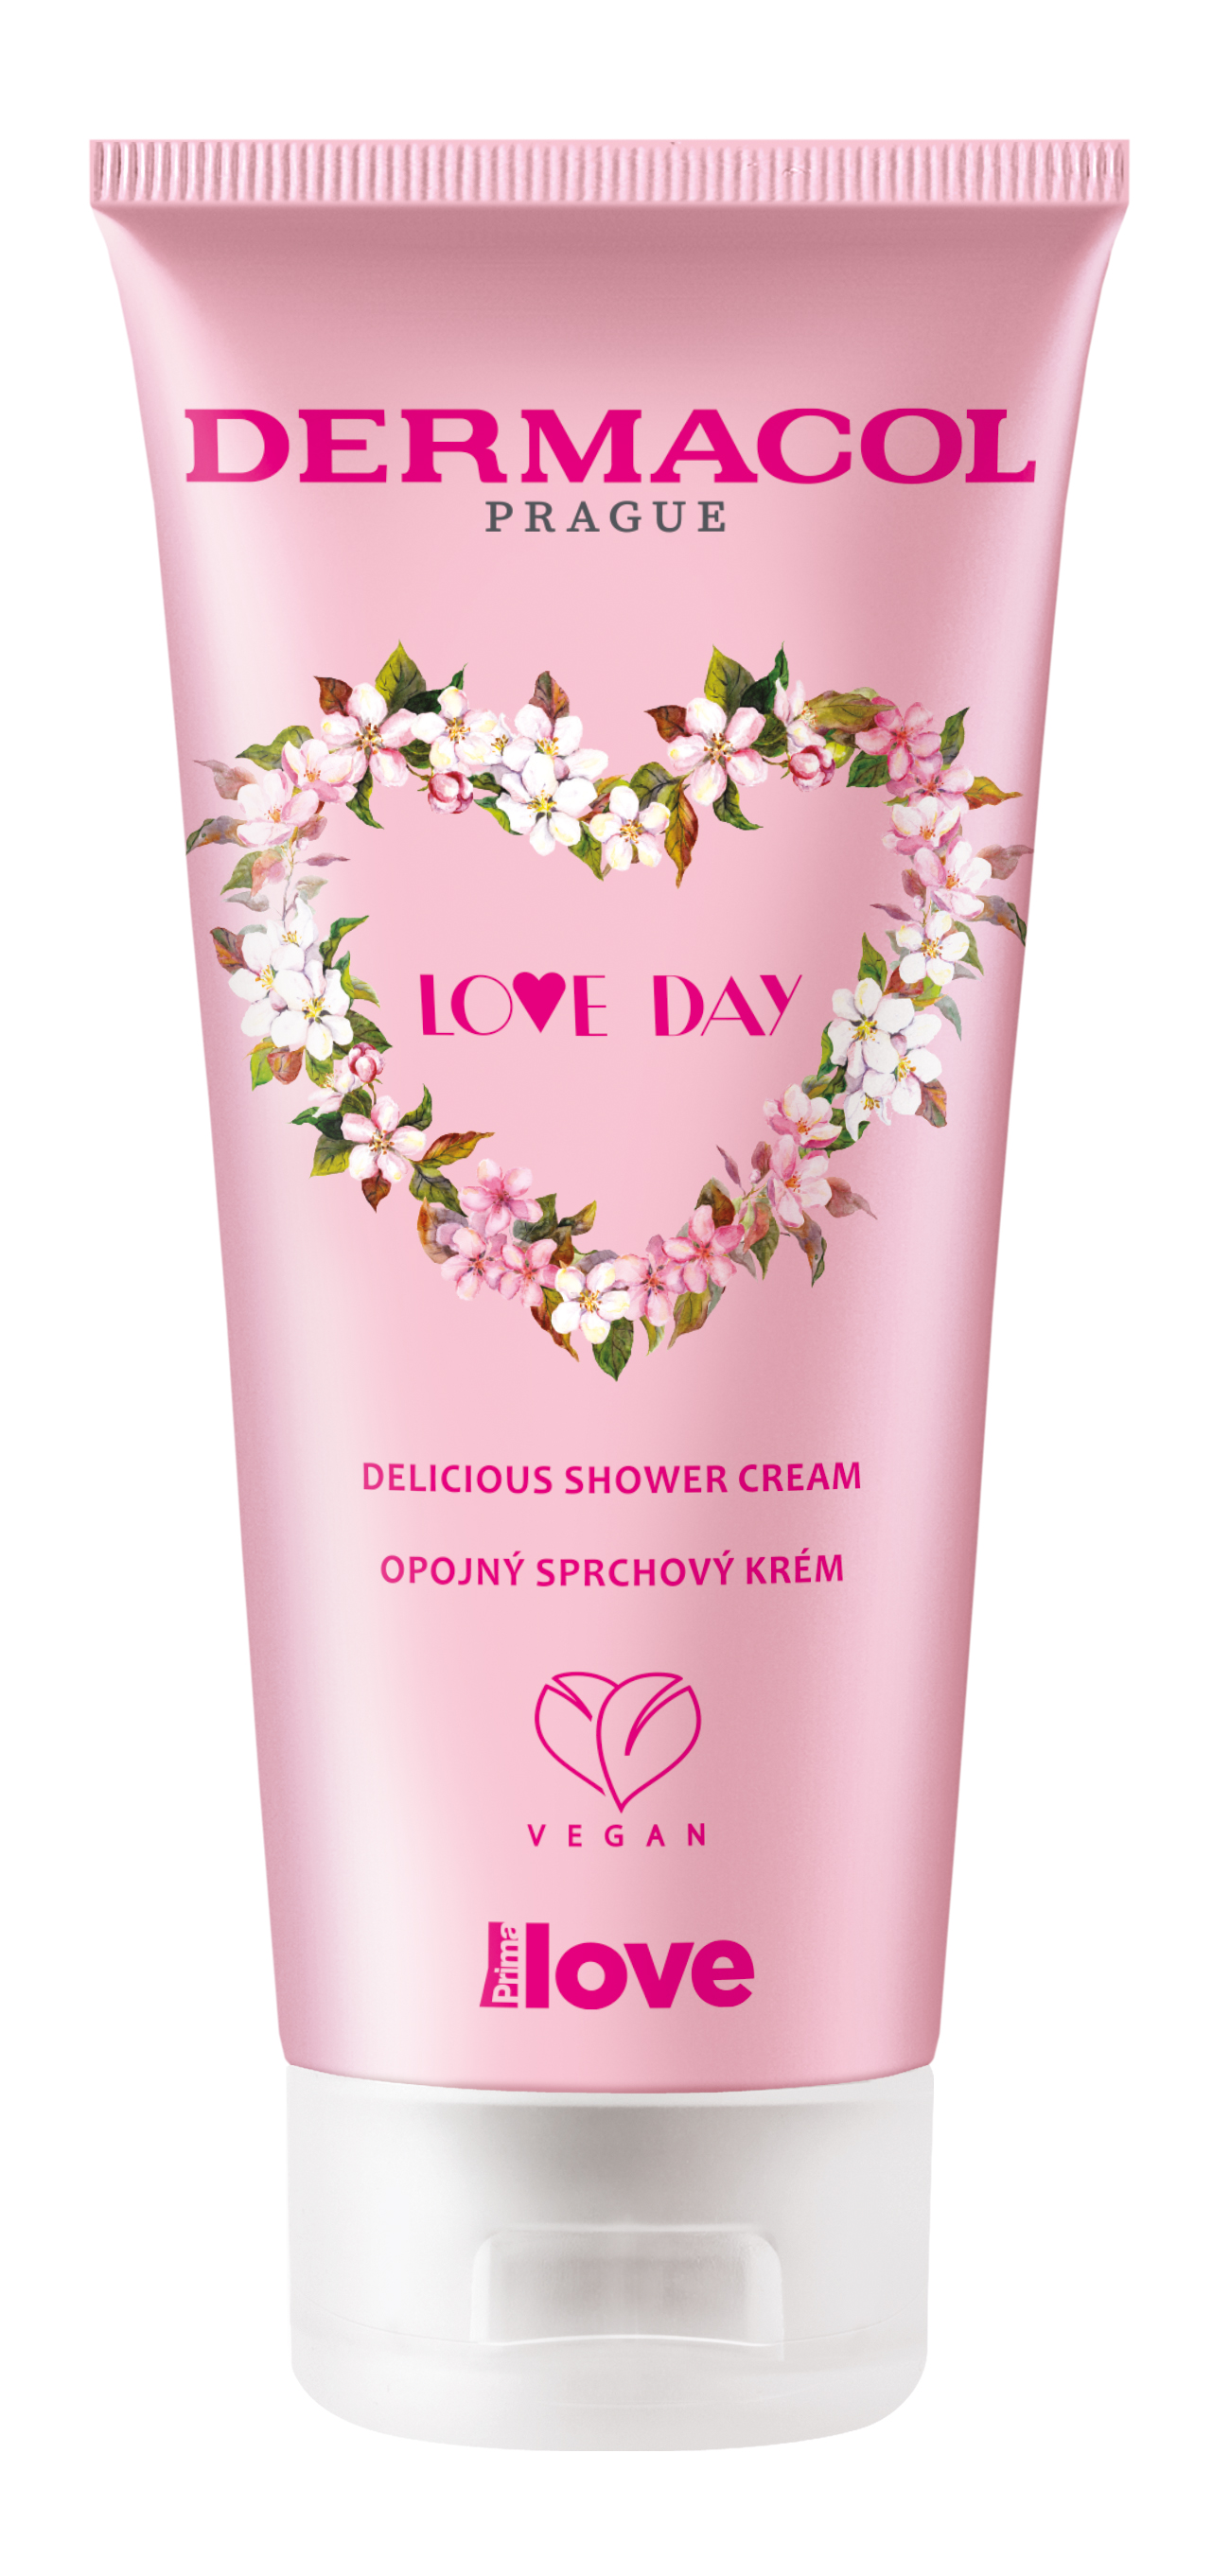 Dermacol Opojný sprchový krém Love Day (Delicious Shower Cream) 200 ml